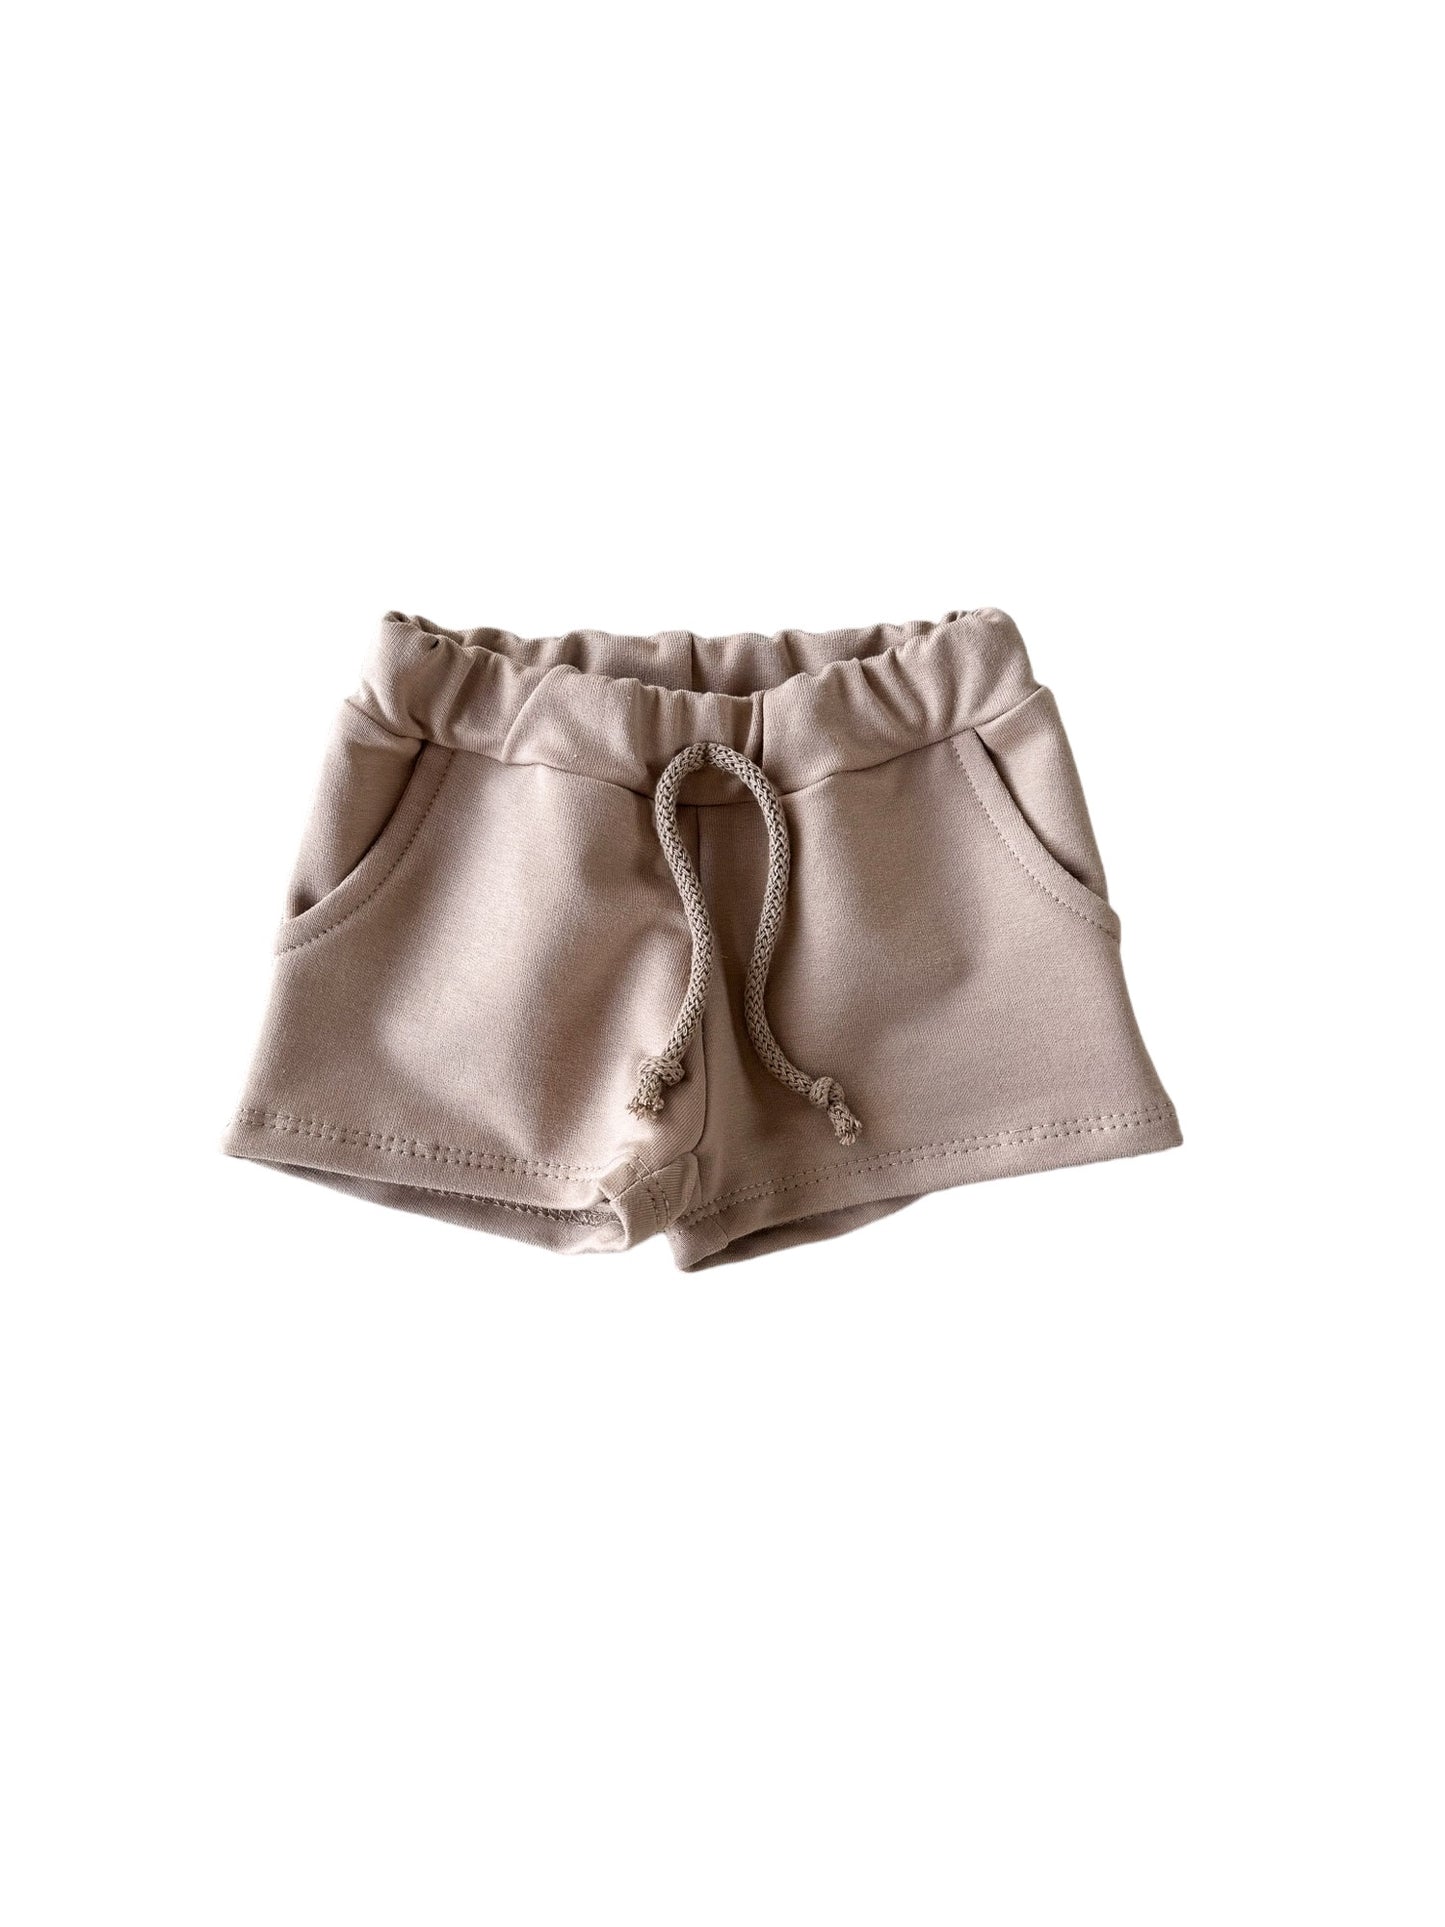 Cotton shorts / dark beige